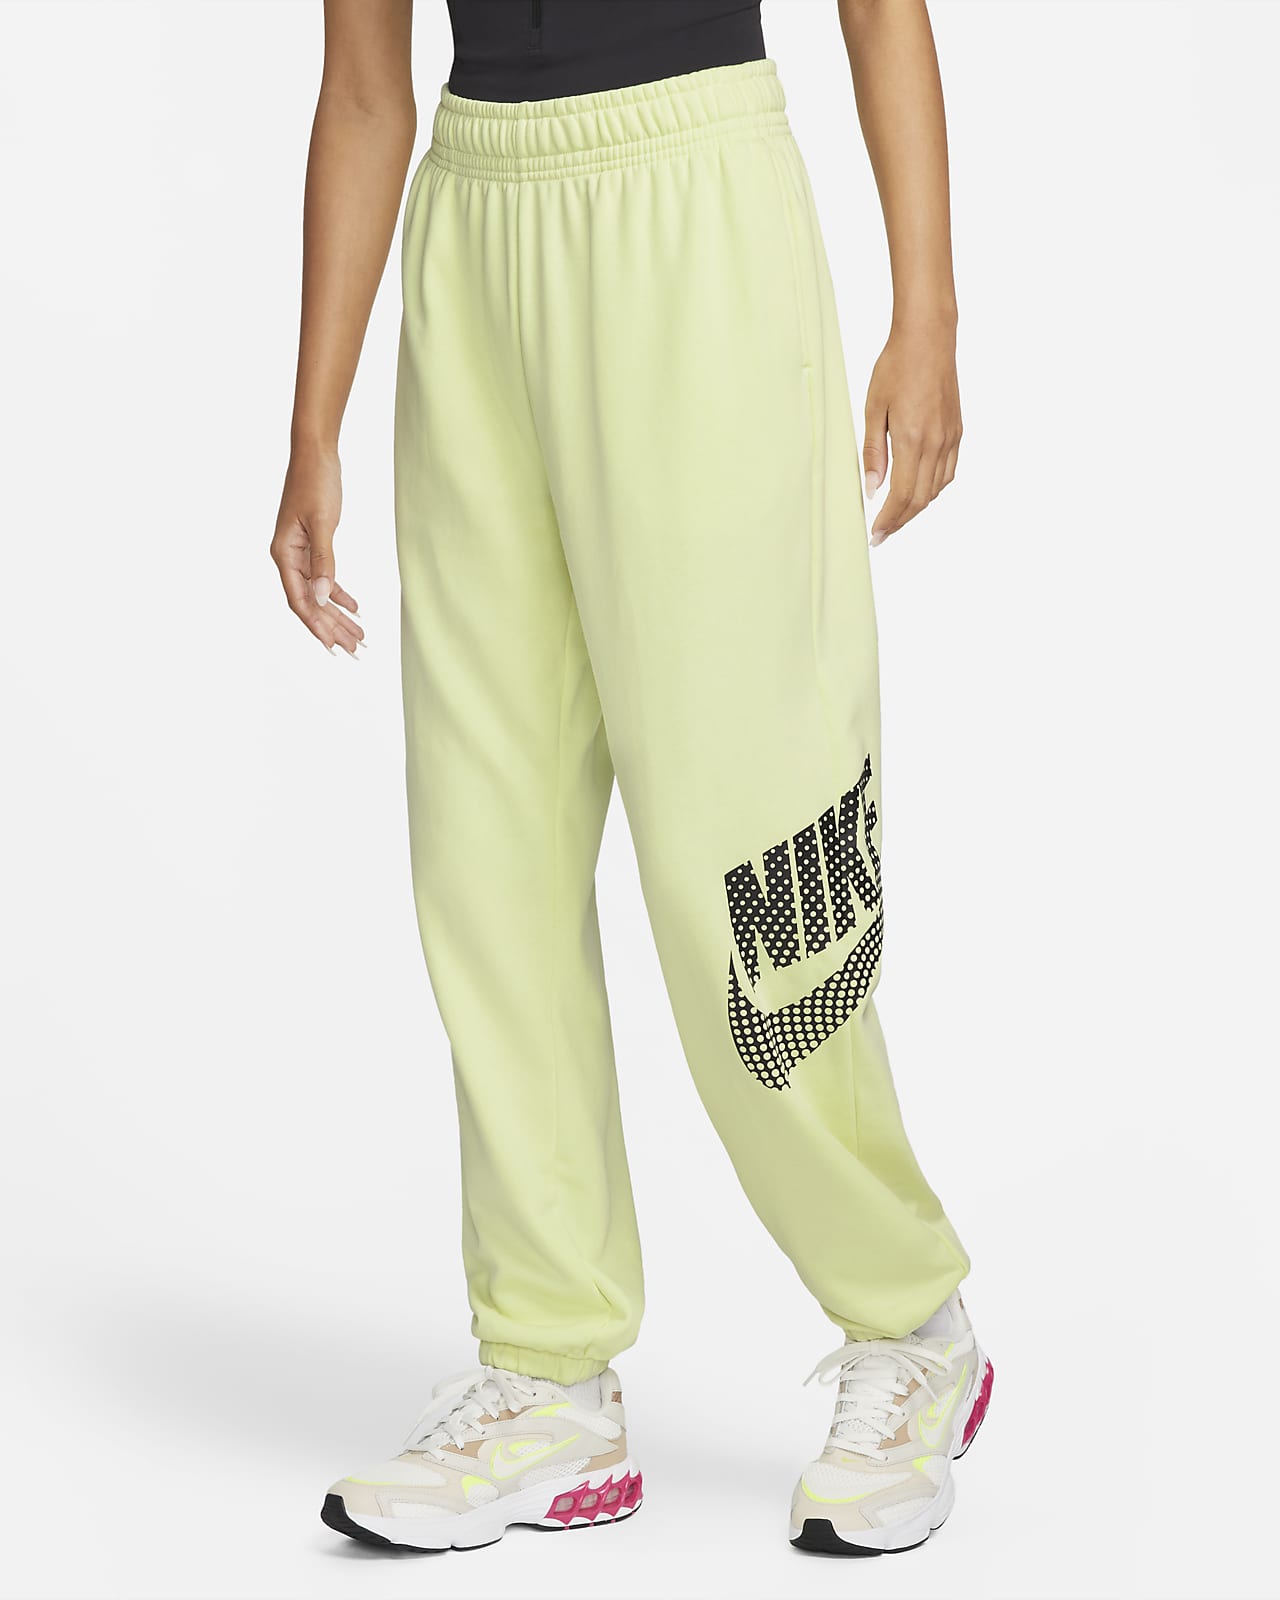 Nike Sportswear Women's Oversized Fleece Dance Trousers